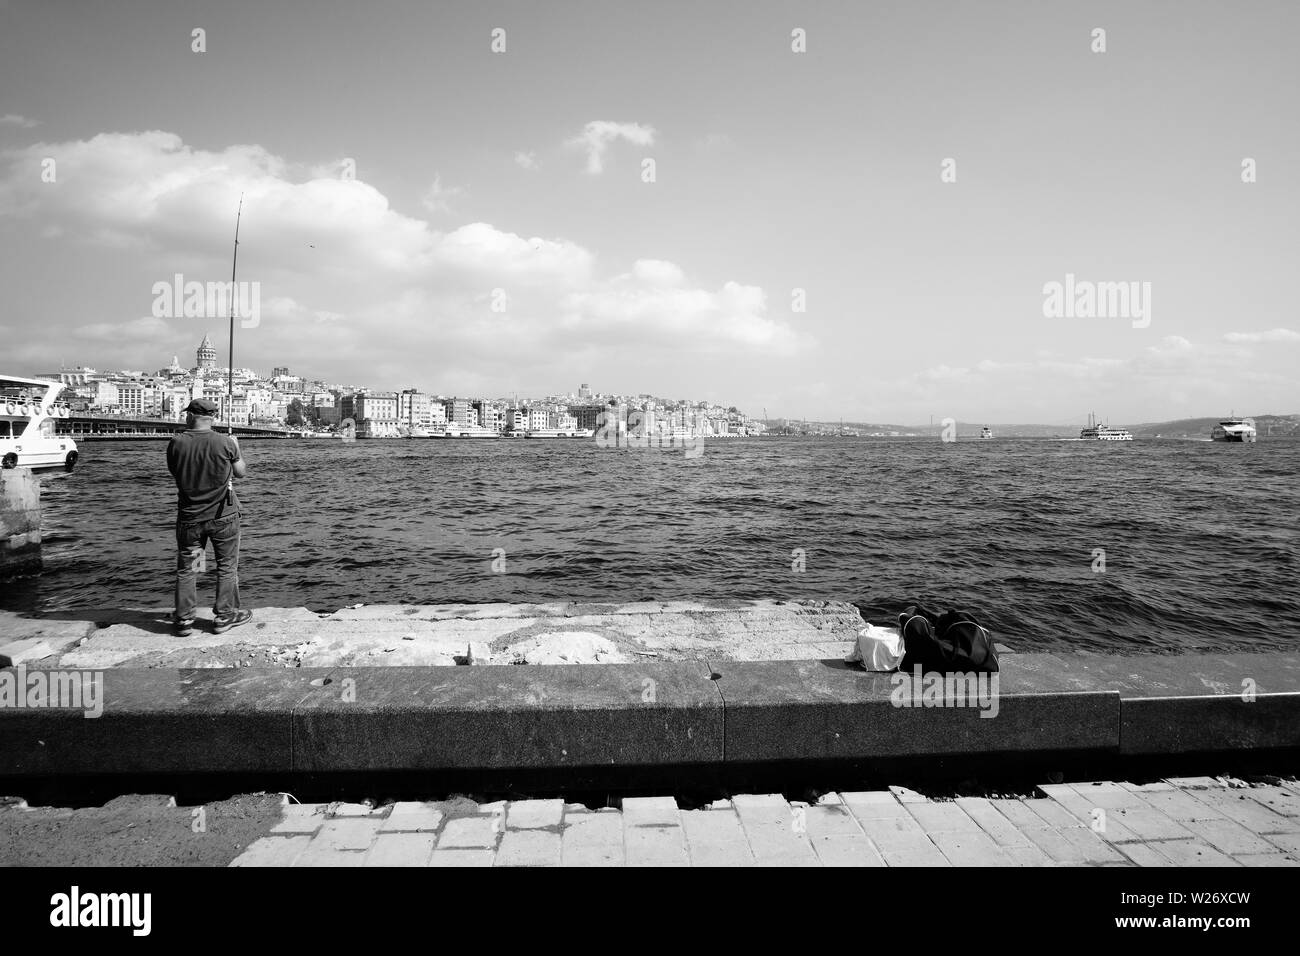 Istanbul, Turquie - 21 septembre 2017:pêcheur sur le quai, avec la célèbre tour de Galata dans la distance Banque D'Images